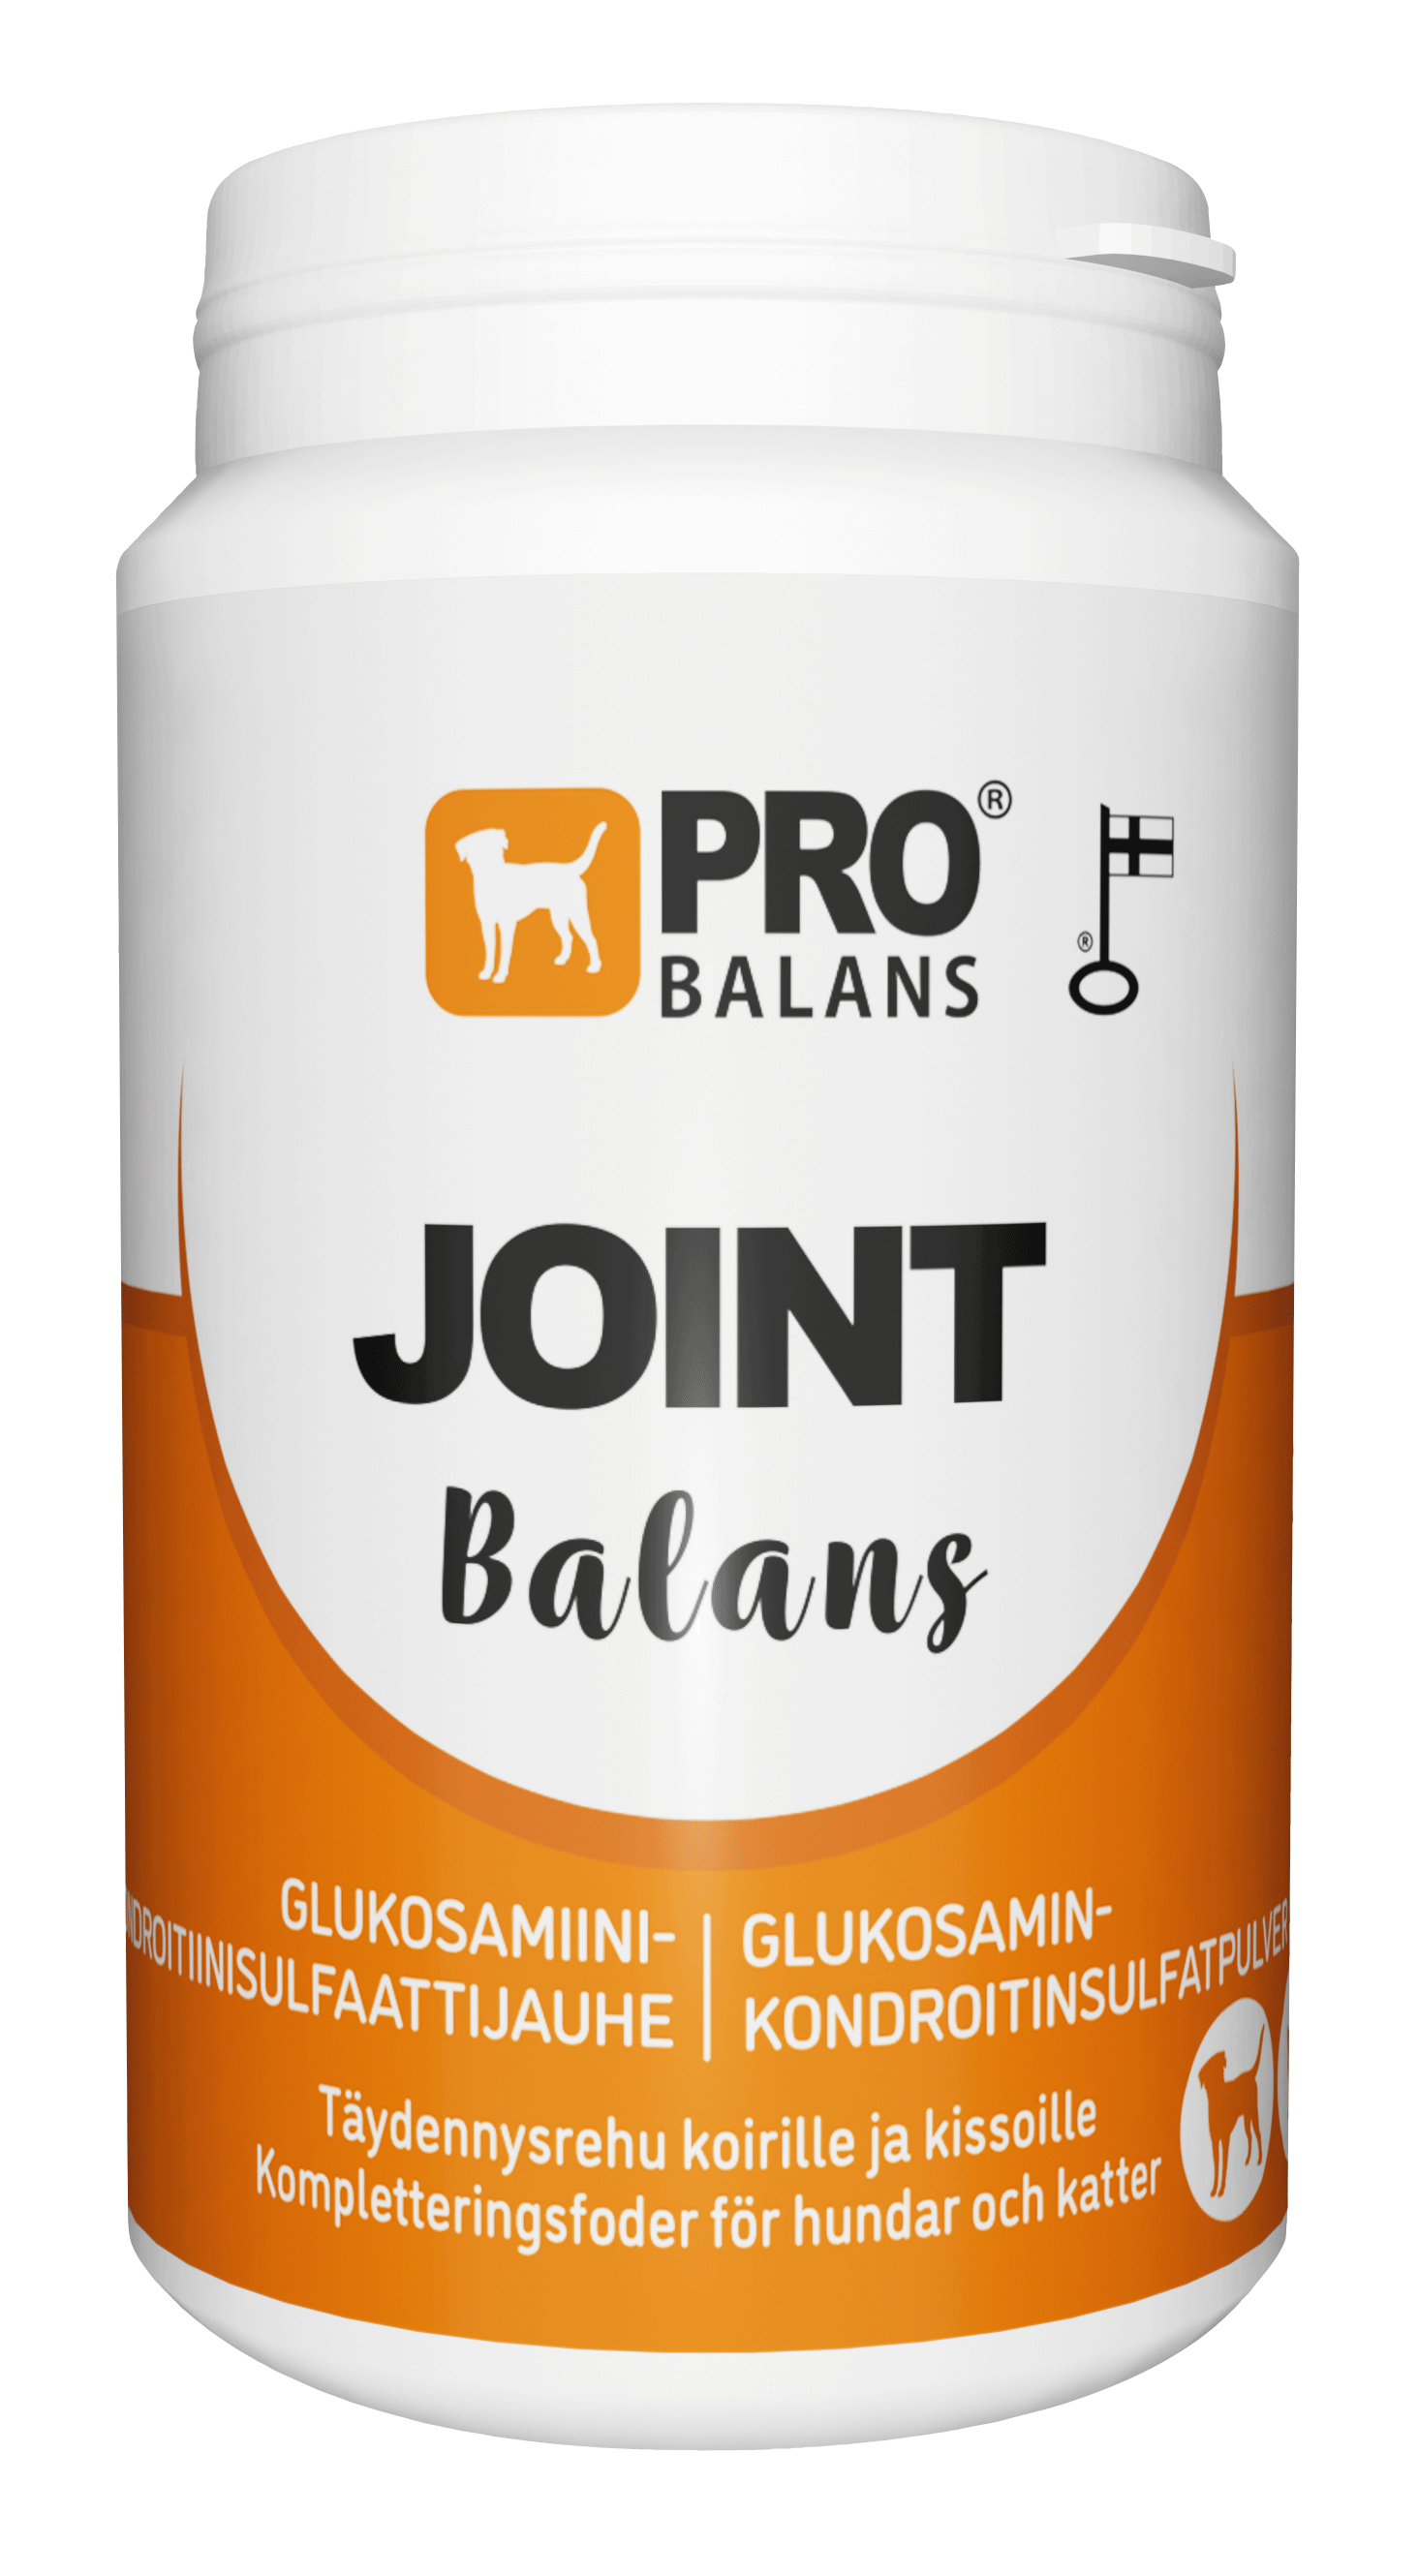 Probalans Joint Balans - Glukosamiini- ja kondroitiinisulfaattijauhe koirille ja kissoille 180 g